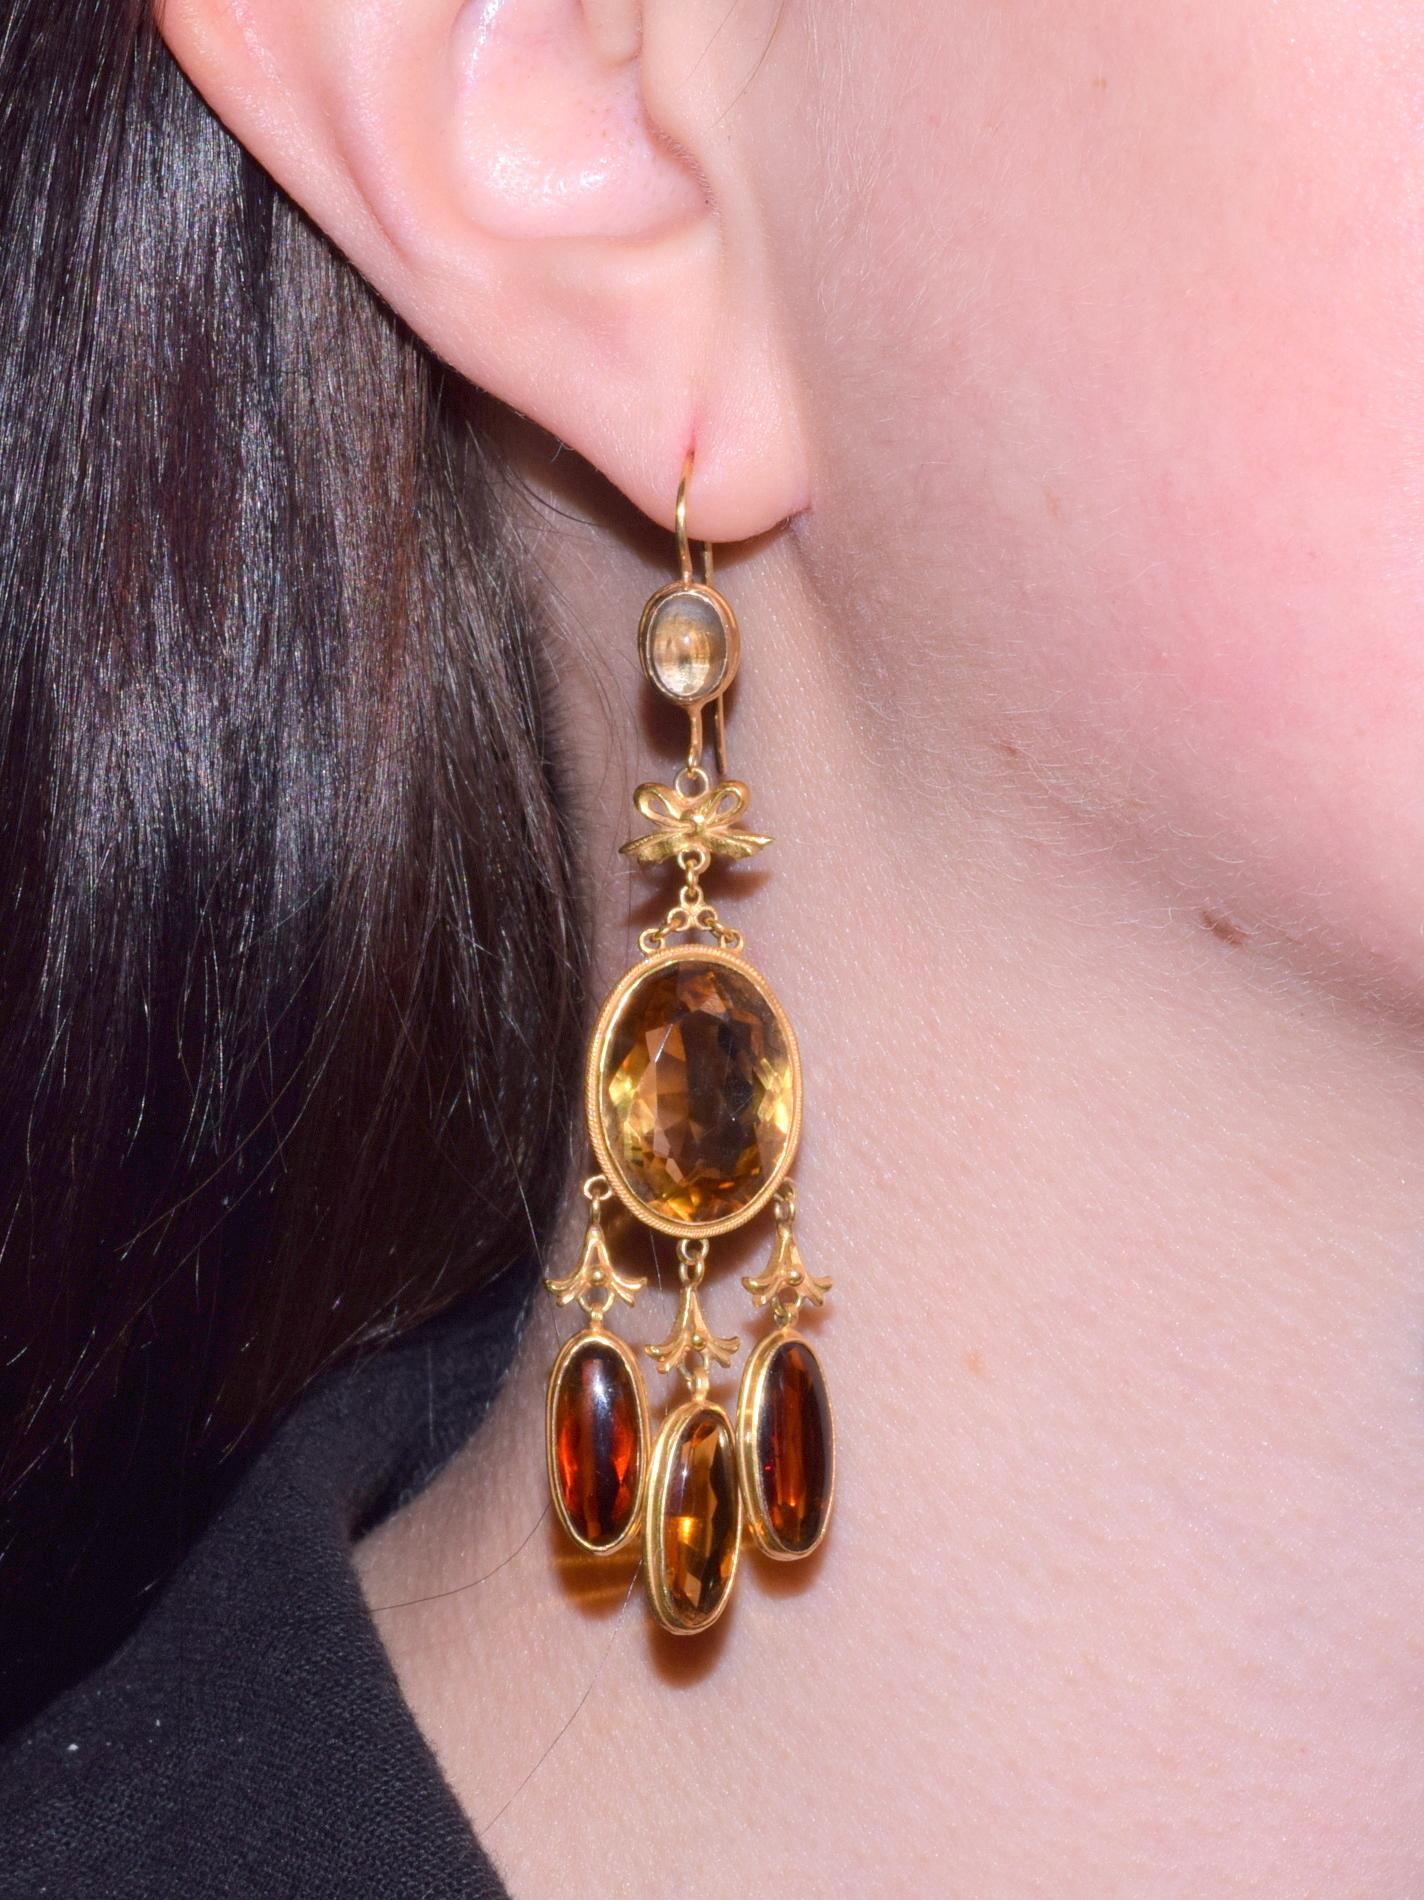 fishbowl earrings